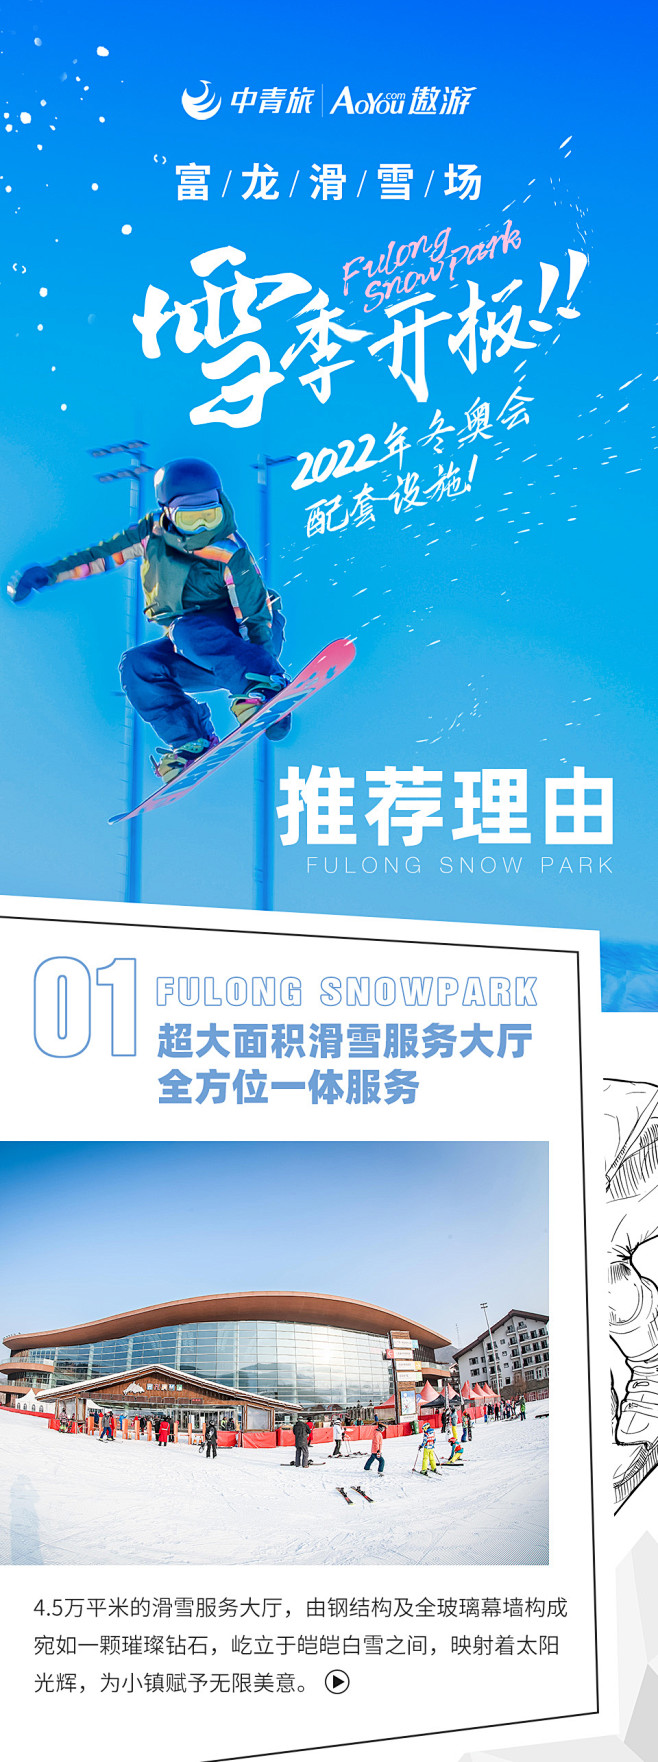 [张家口富龙滑雪场-全天缆车票]富龙滑雪...